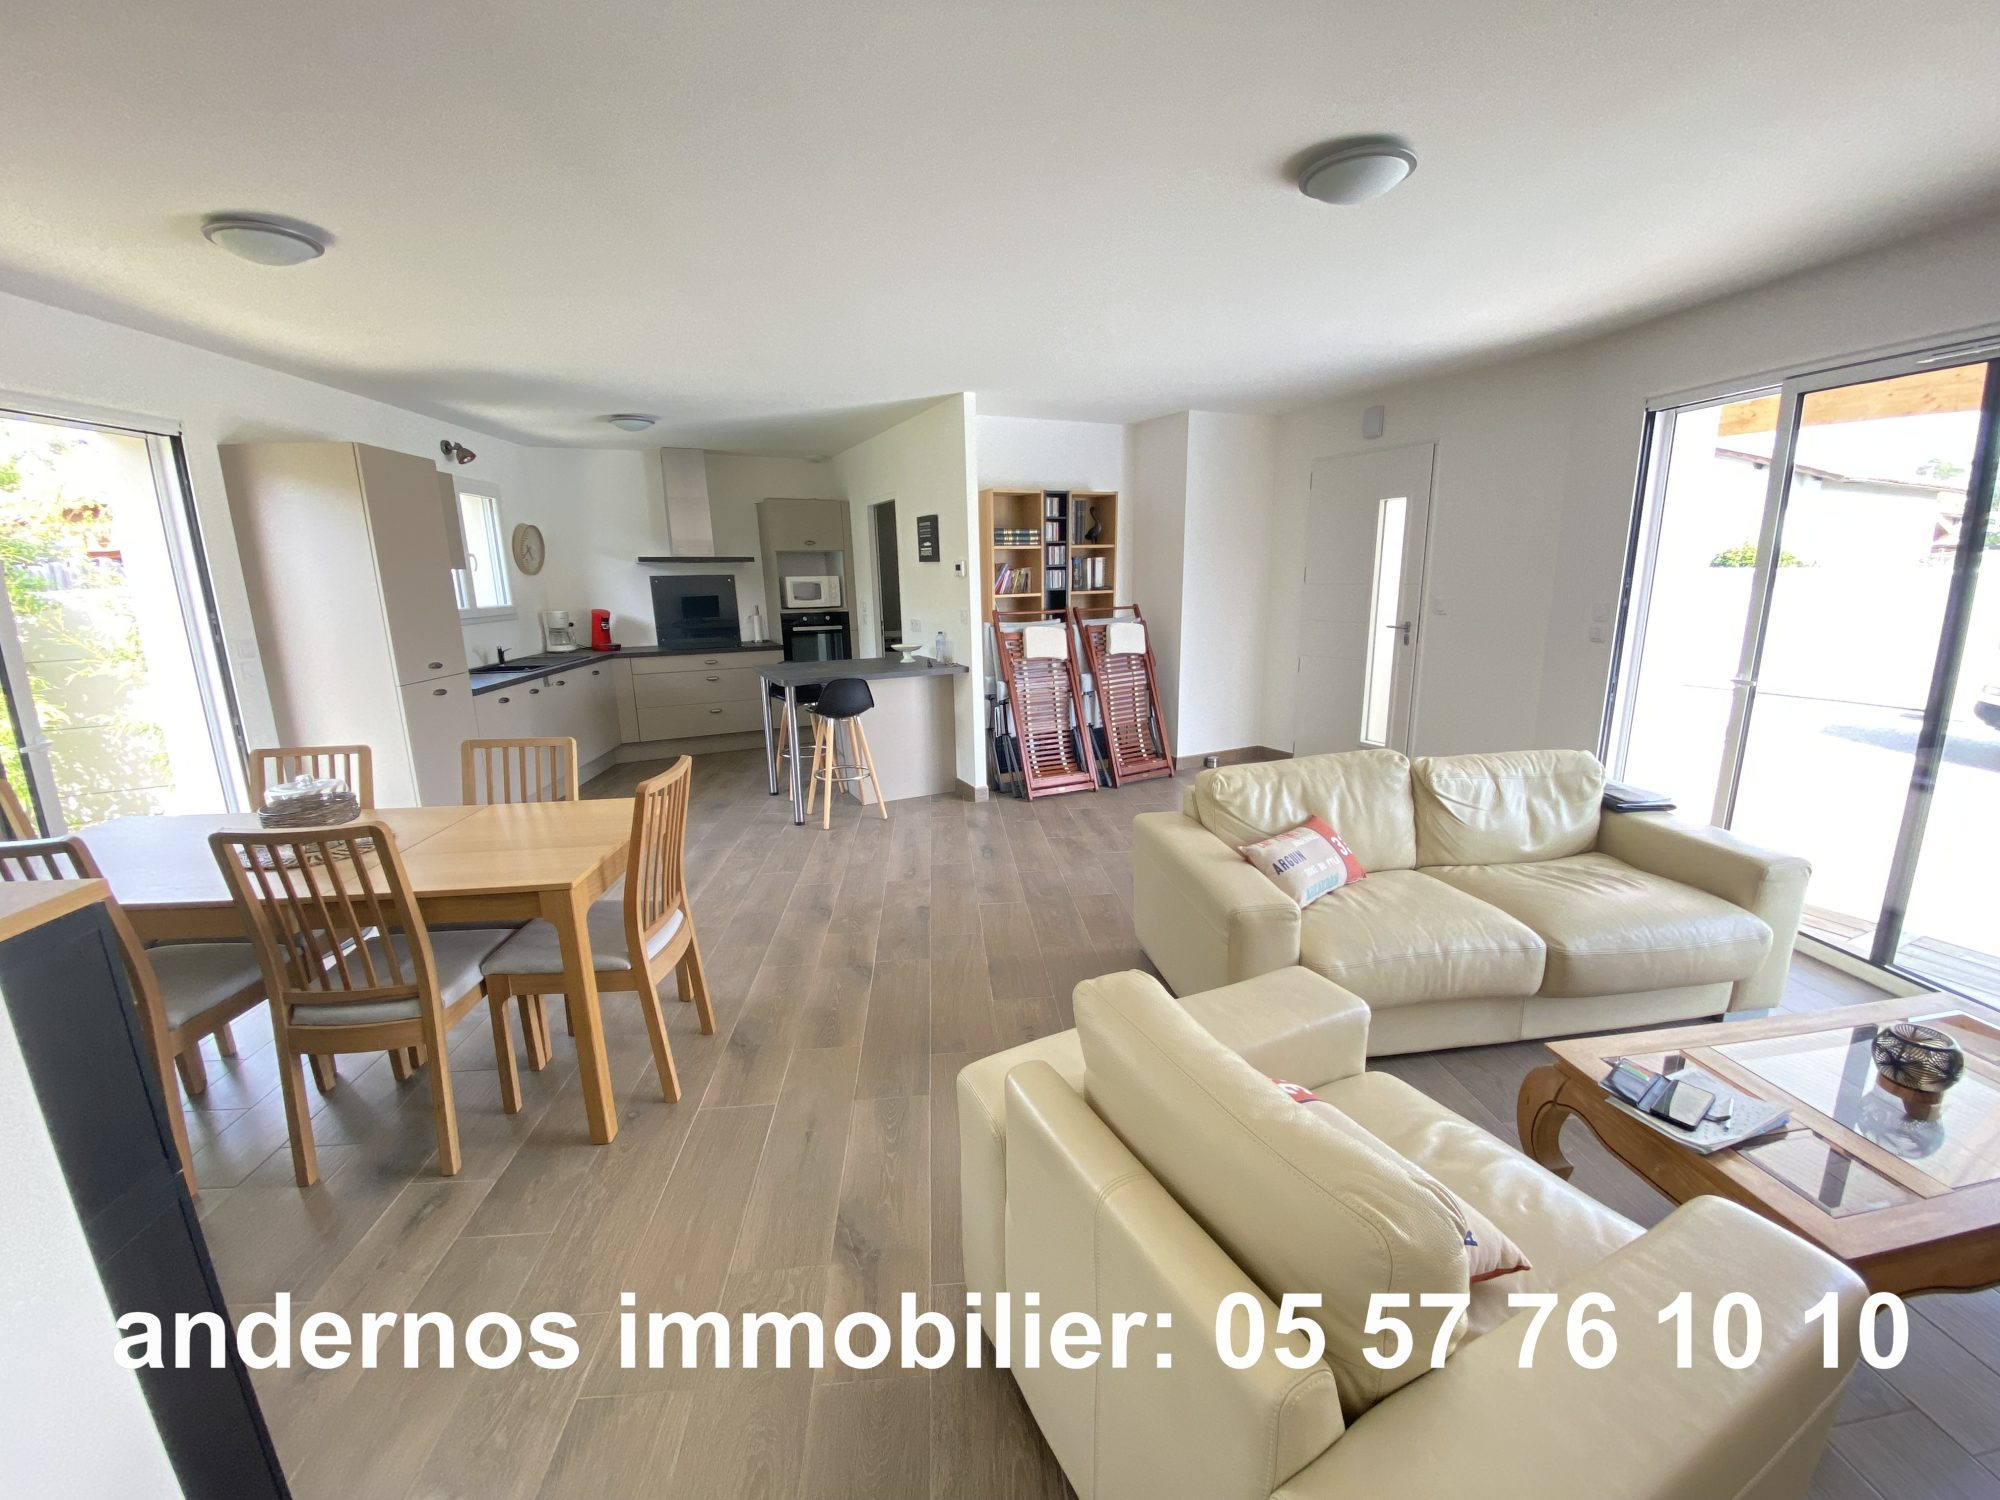 Vente Maison 91m² 4 Pièces à Andernos-les-Bains (33510) - Andernos Immobilier